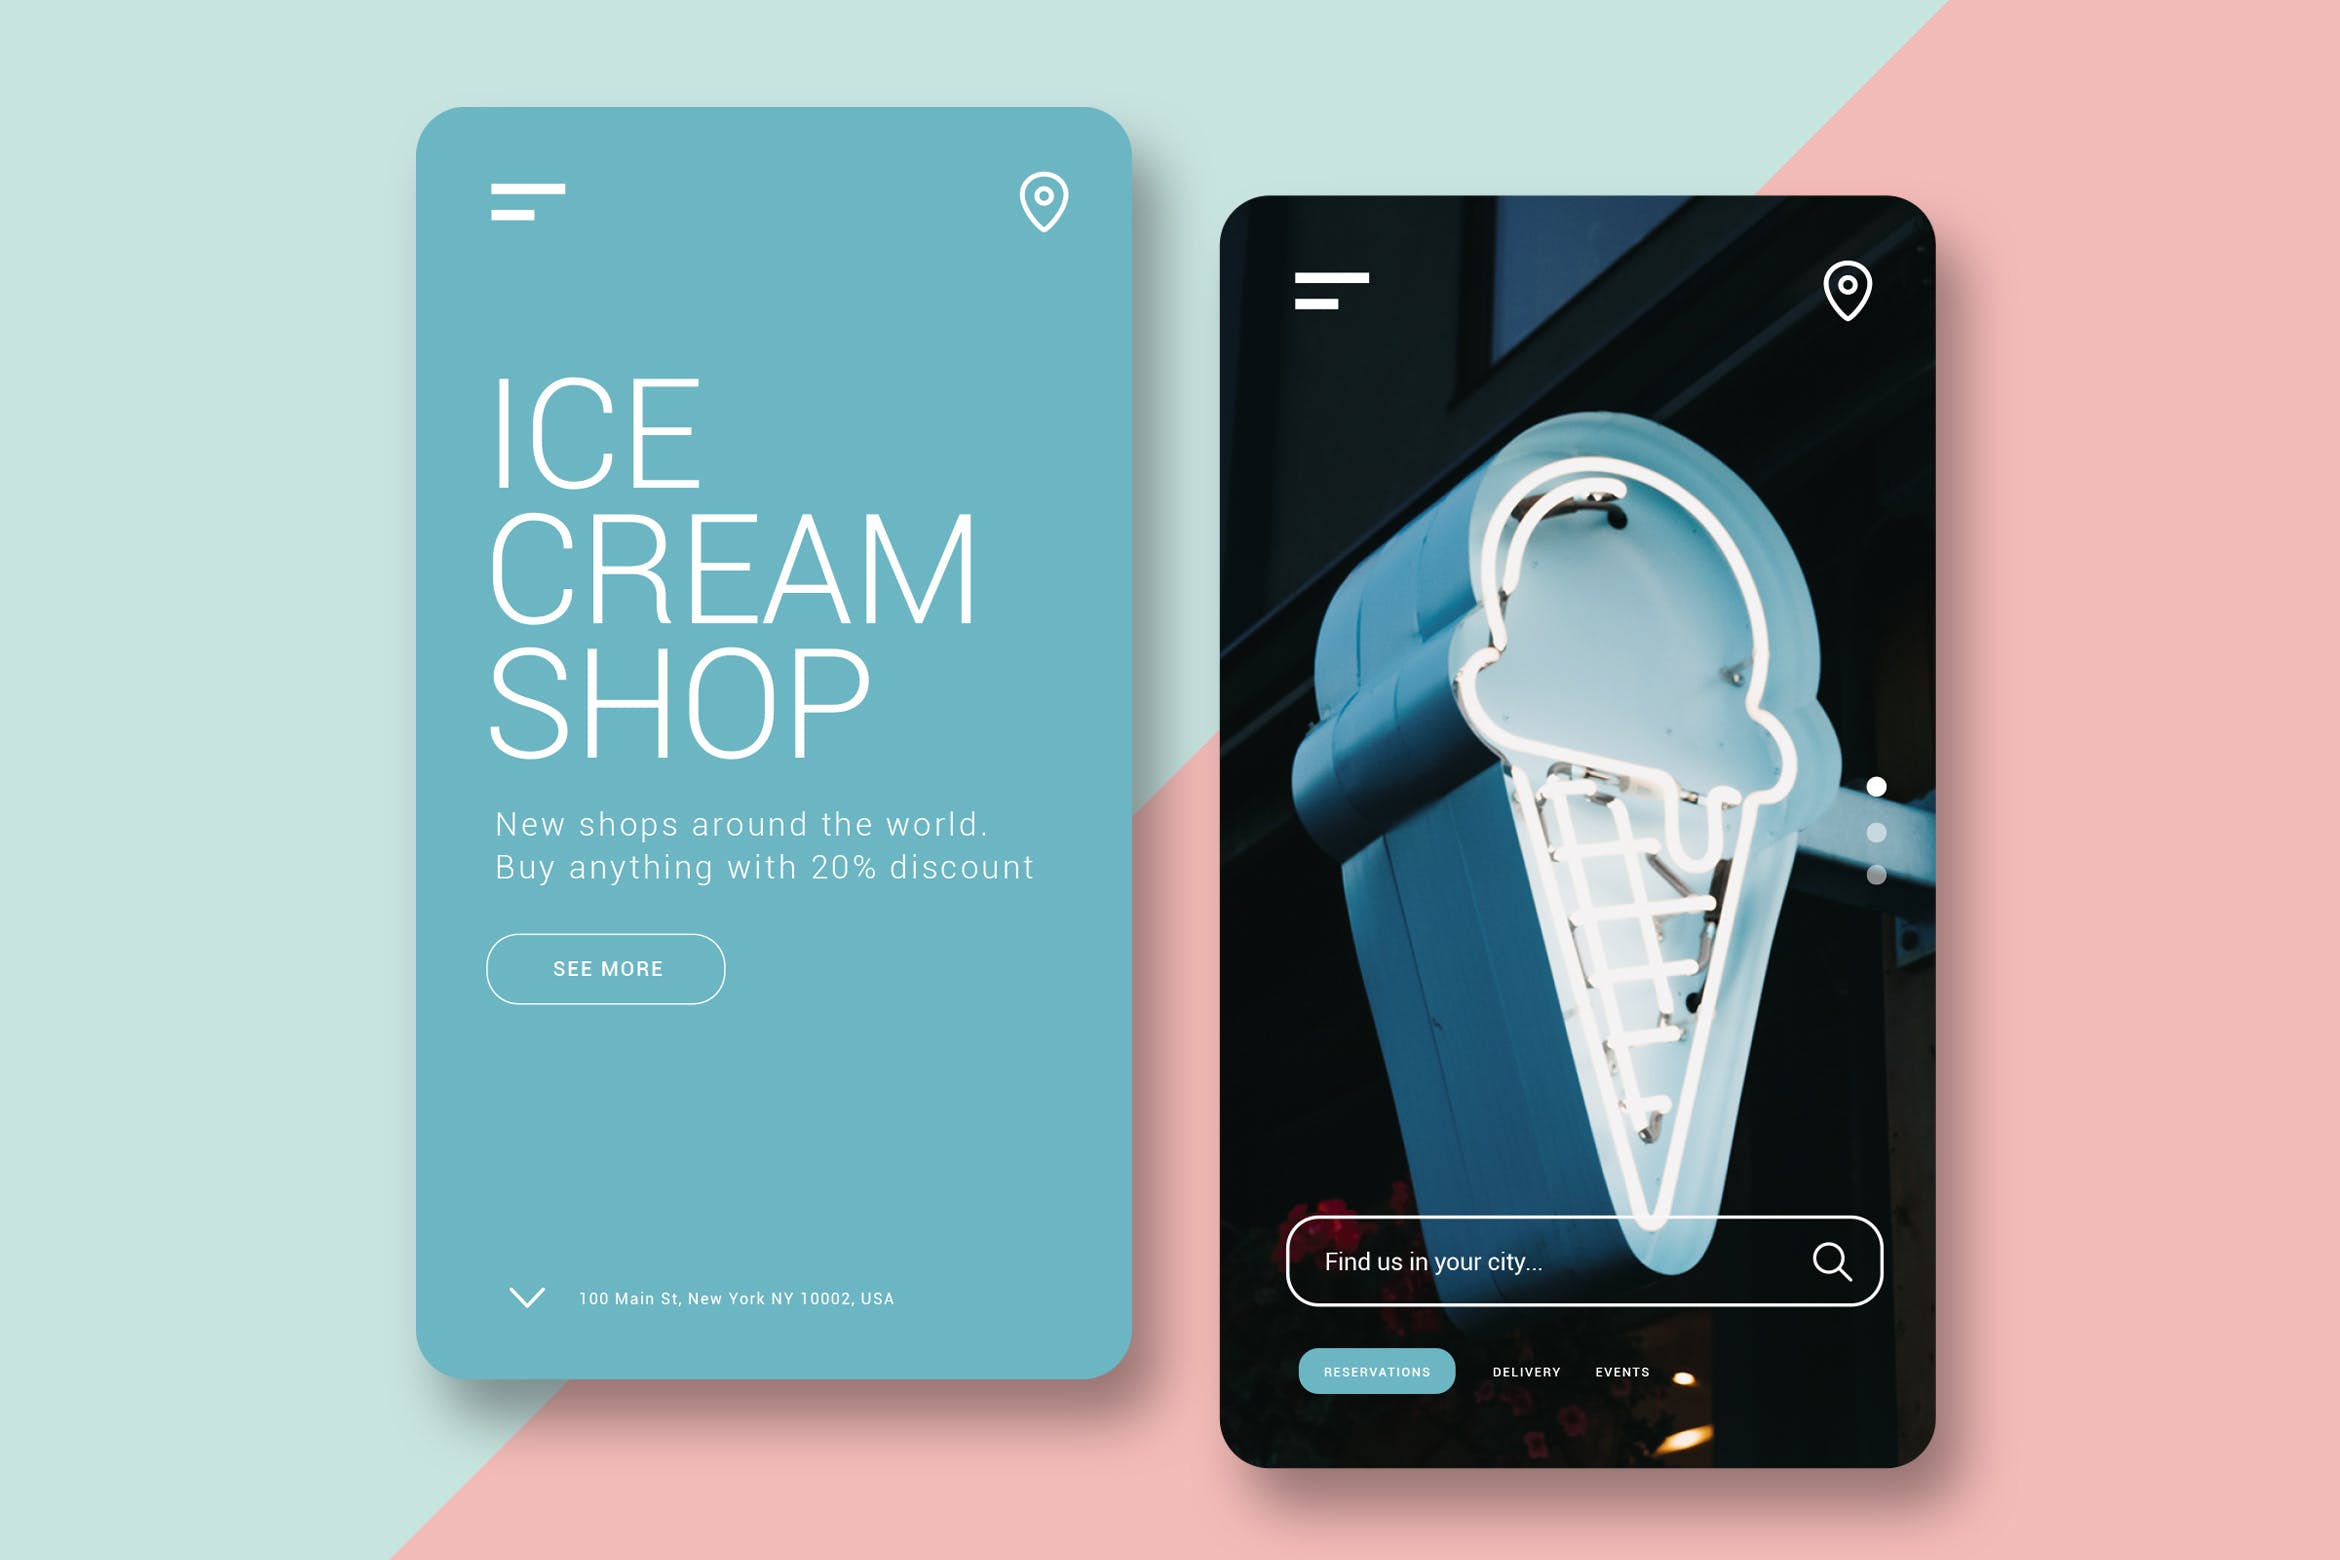 雪糕店/甜品品牌官网H5网站设计第一素材精选模板 Ice Cream Shop – Mobile UI Kit插图